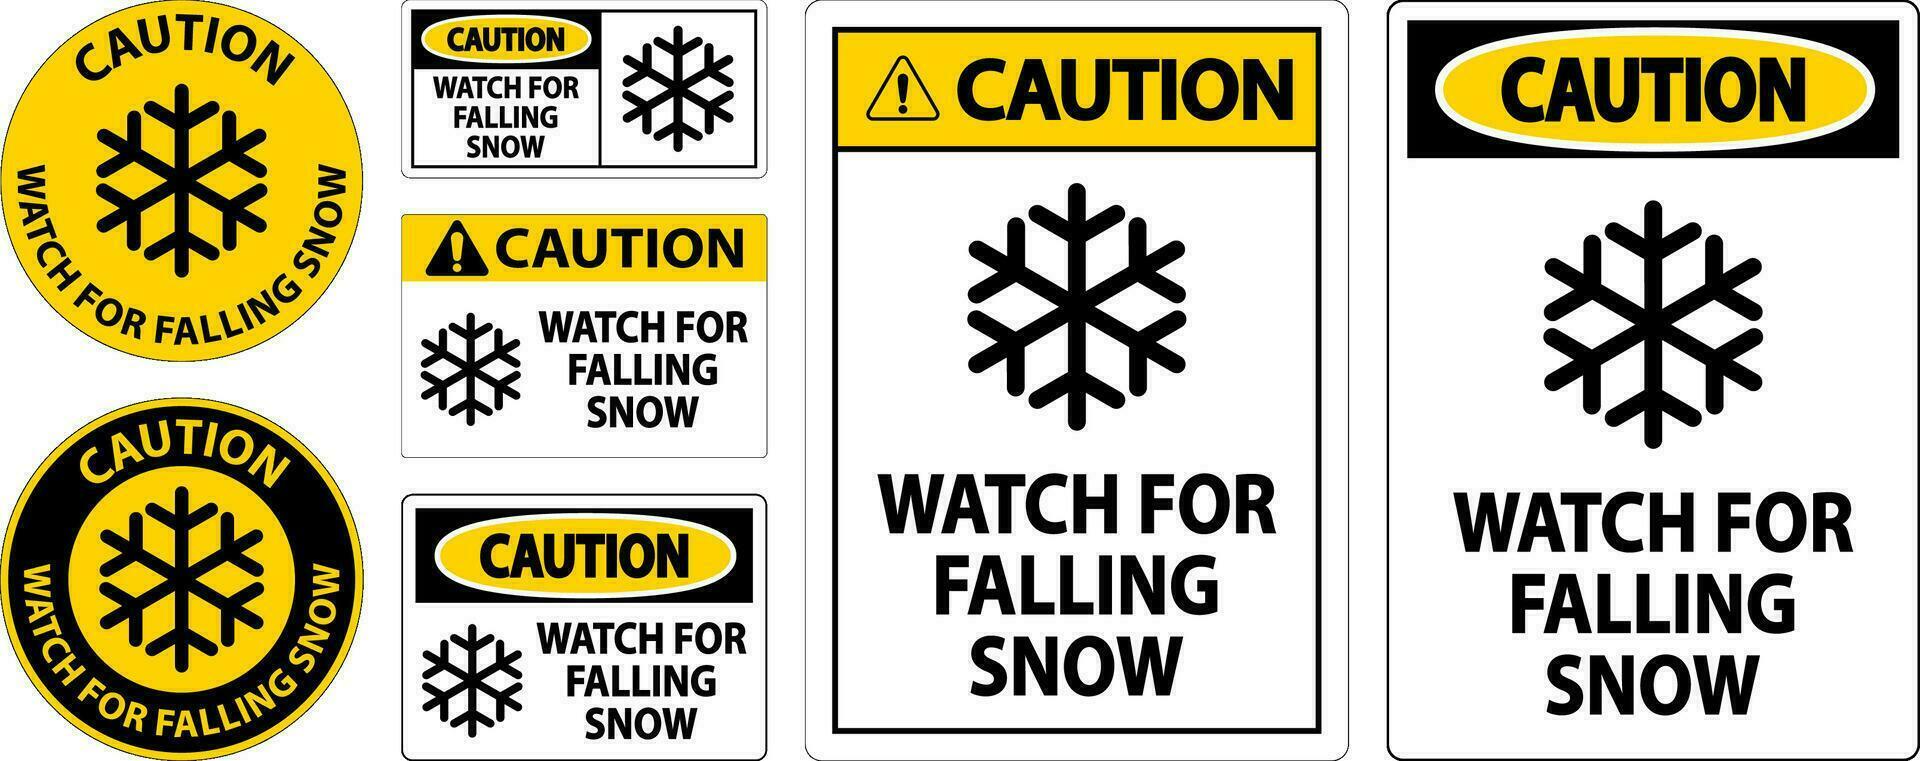 attenzione cartello orologio per caduta neve vettore